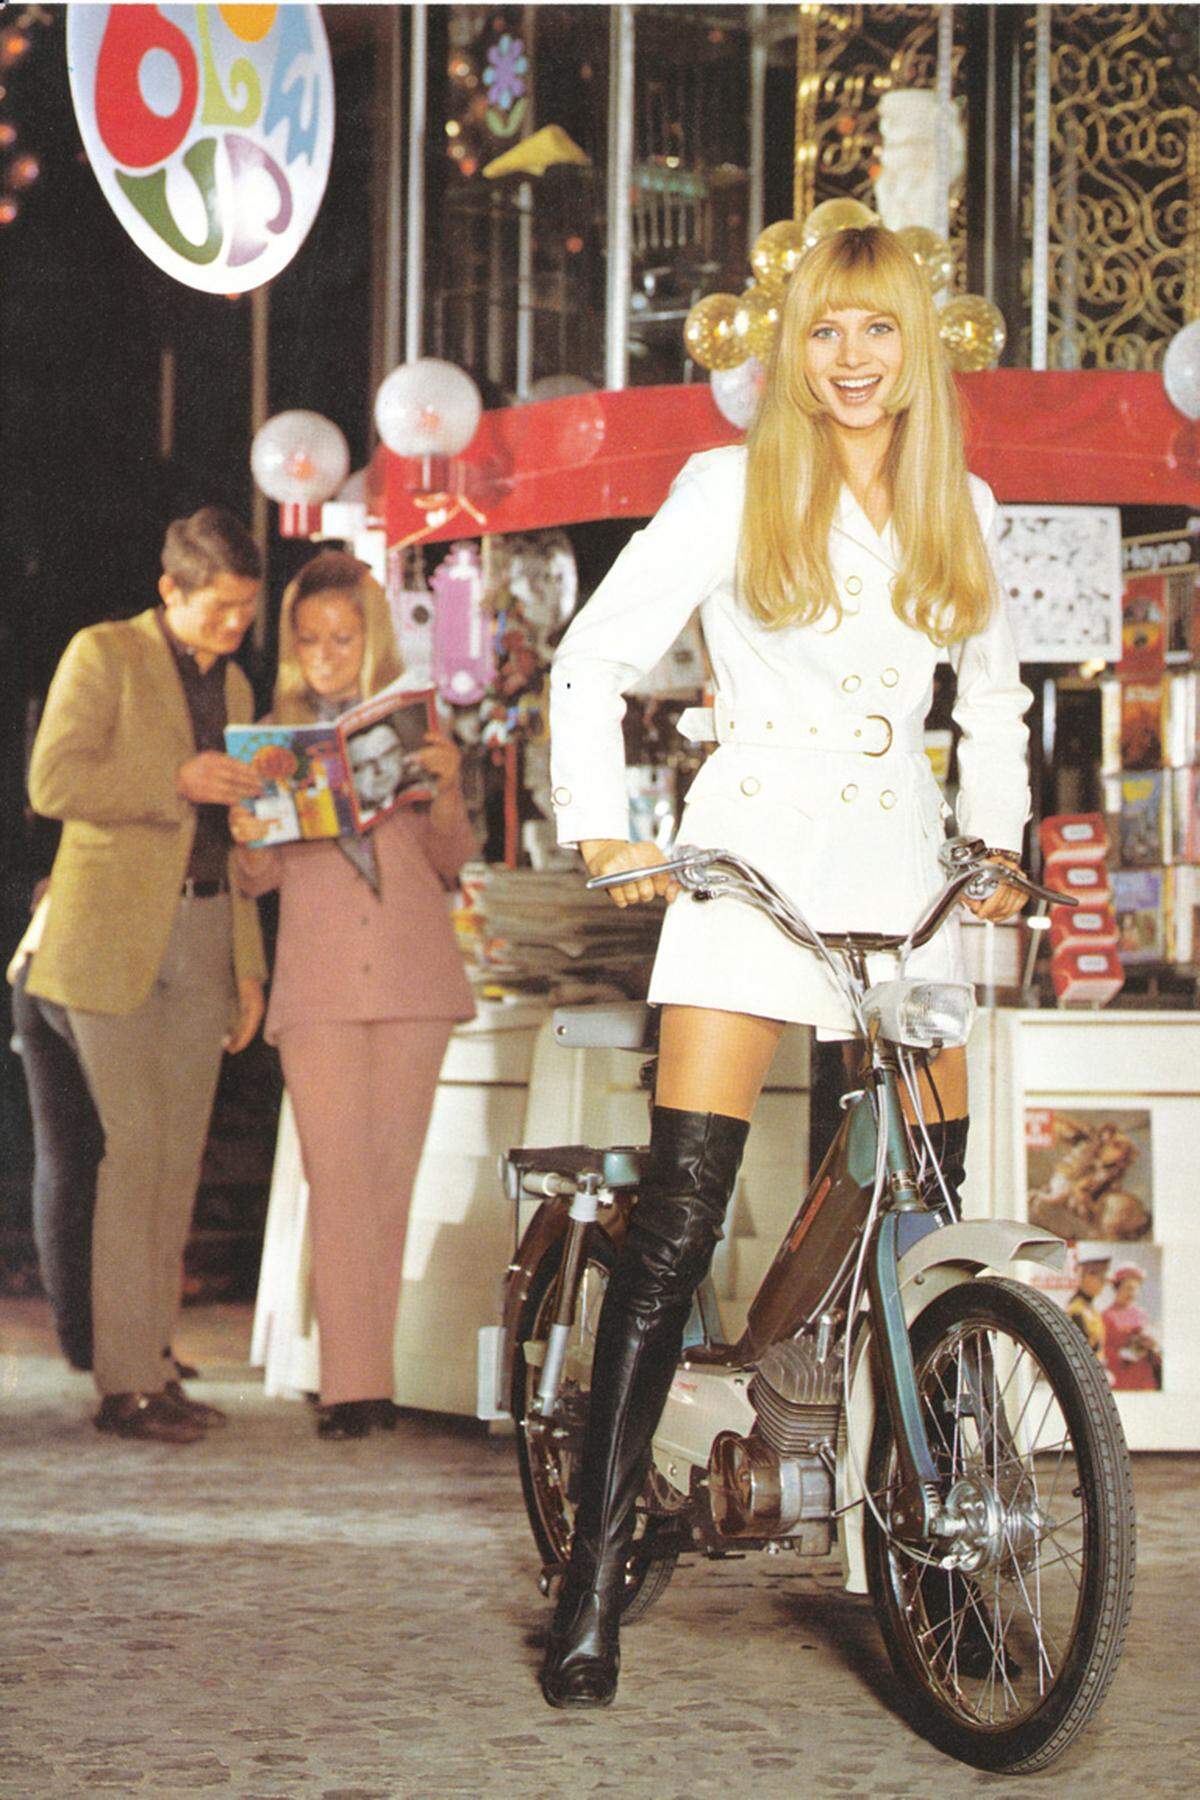 Als die Mofas aufkamen, wurden diese auch von den Damen angenommen und waren oft im Straßenbild zu sehen. Hier eine Moto Morini Mofa aus Italien.